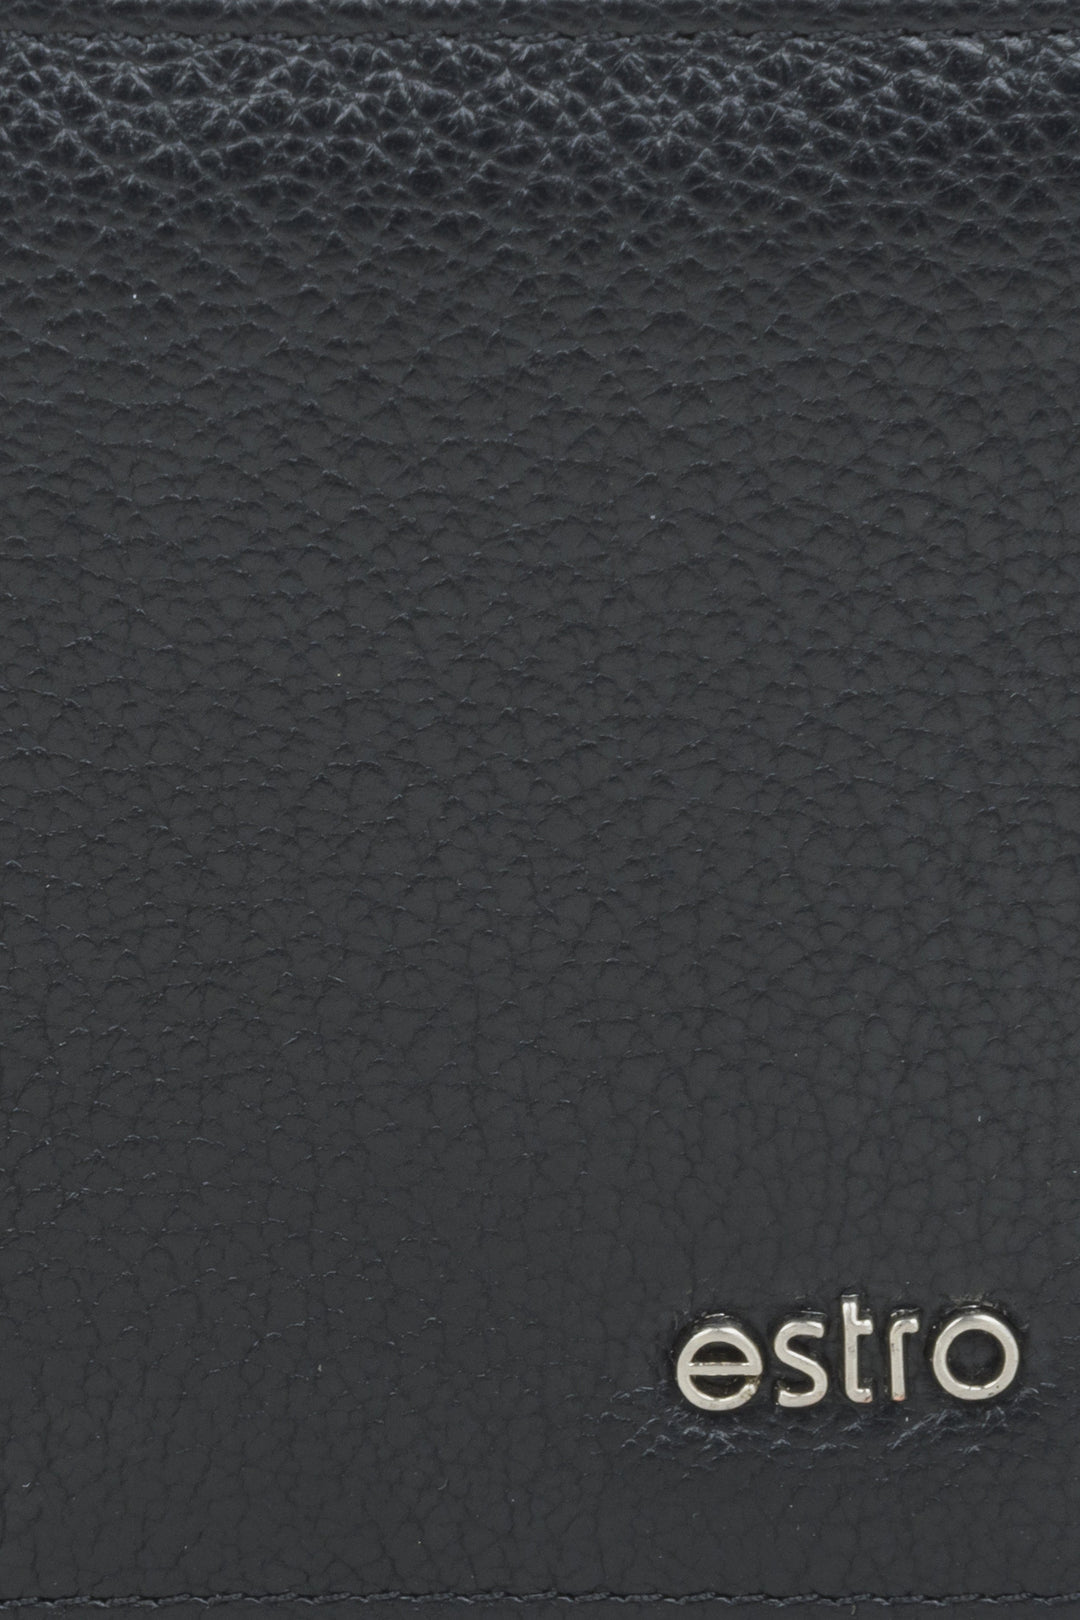 Poręczny czarny portfel męski Estro w kolorze czarnym - zbliżenie na detale.